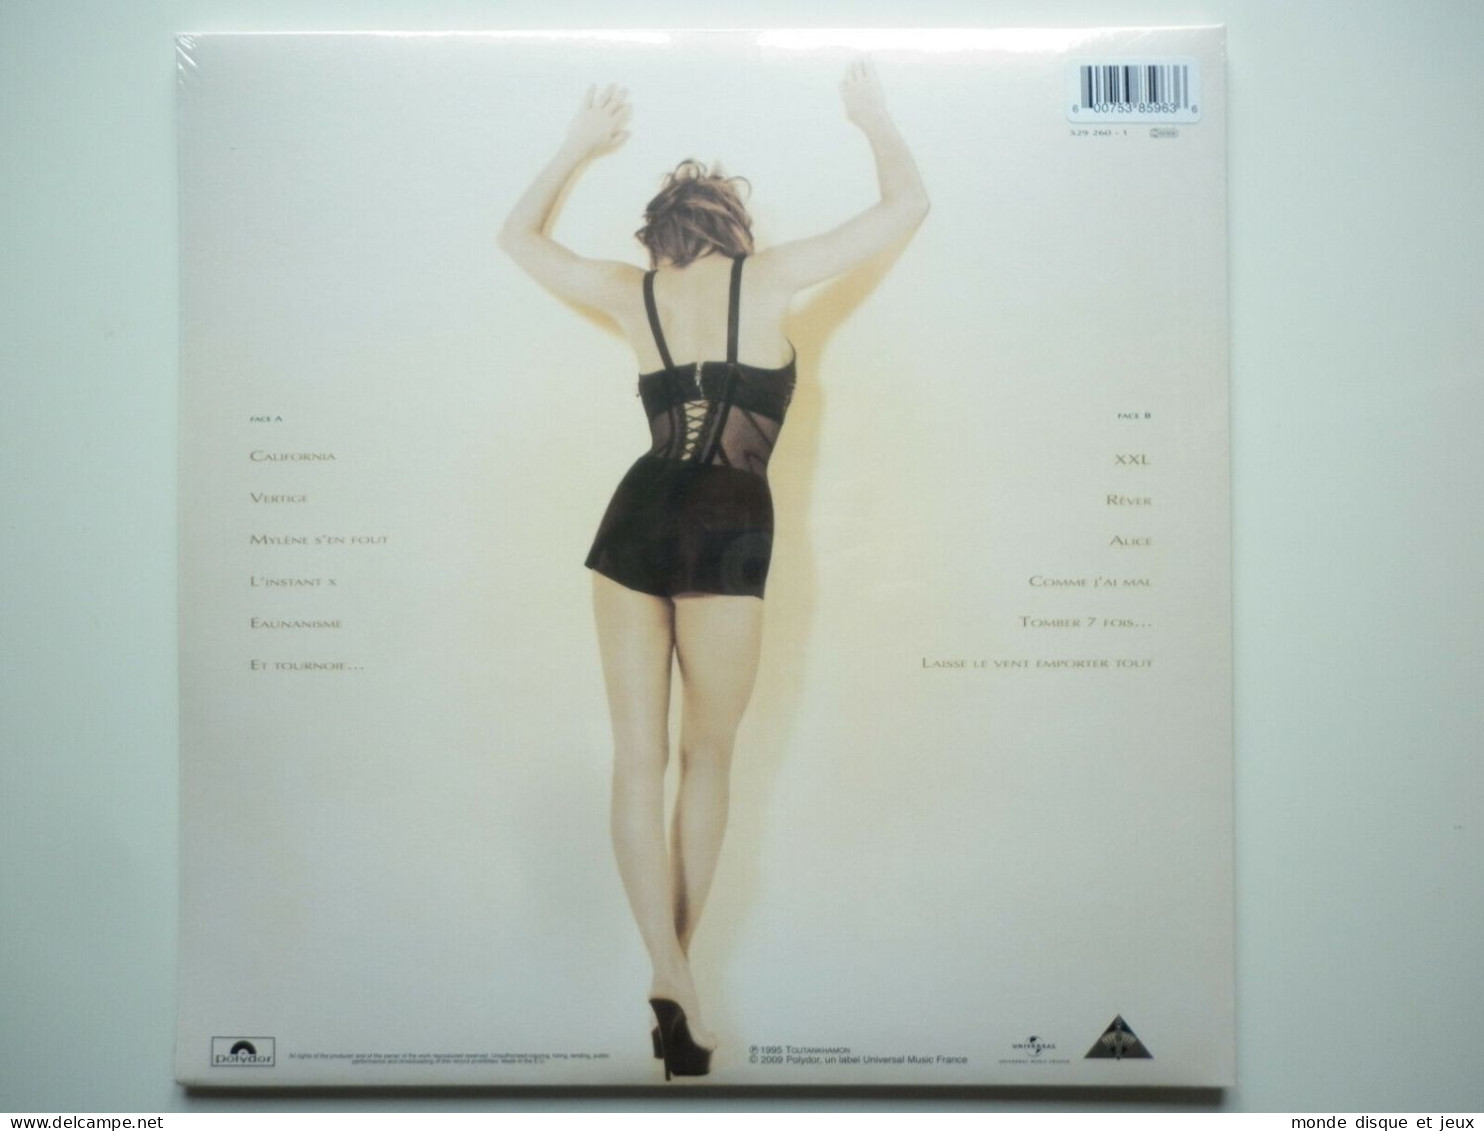 Mylene Farmer Album 33Tours Anamorphosée Exclusivité Vinyle Couleur Rouge Splatter - Otros - Canción Francesa